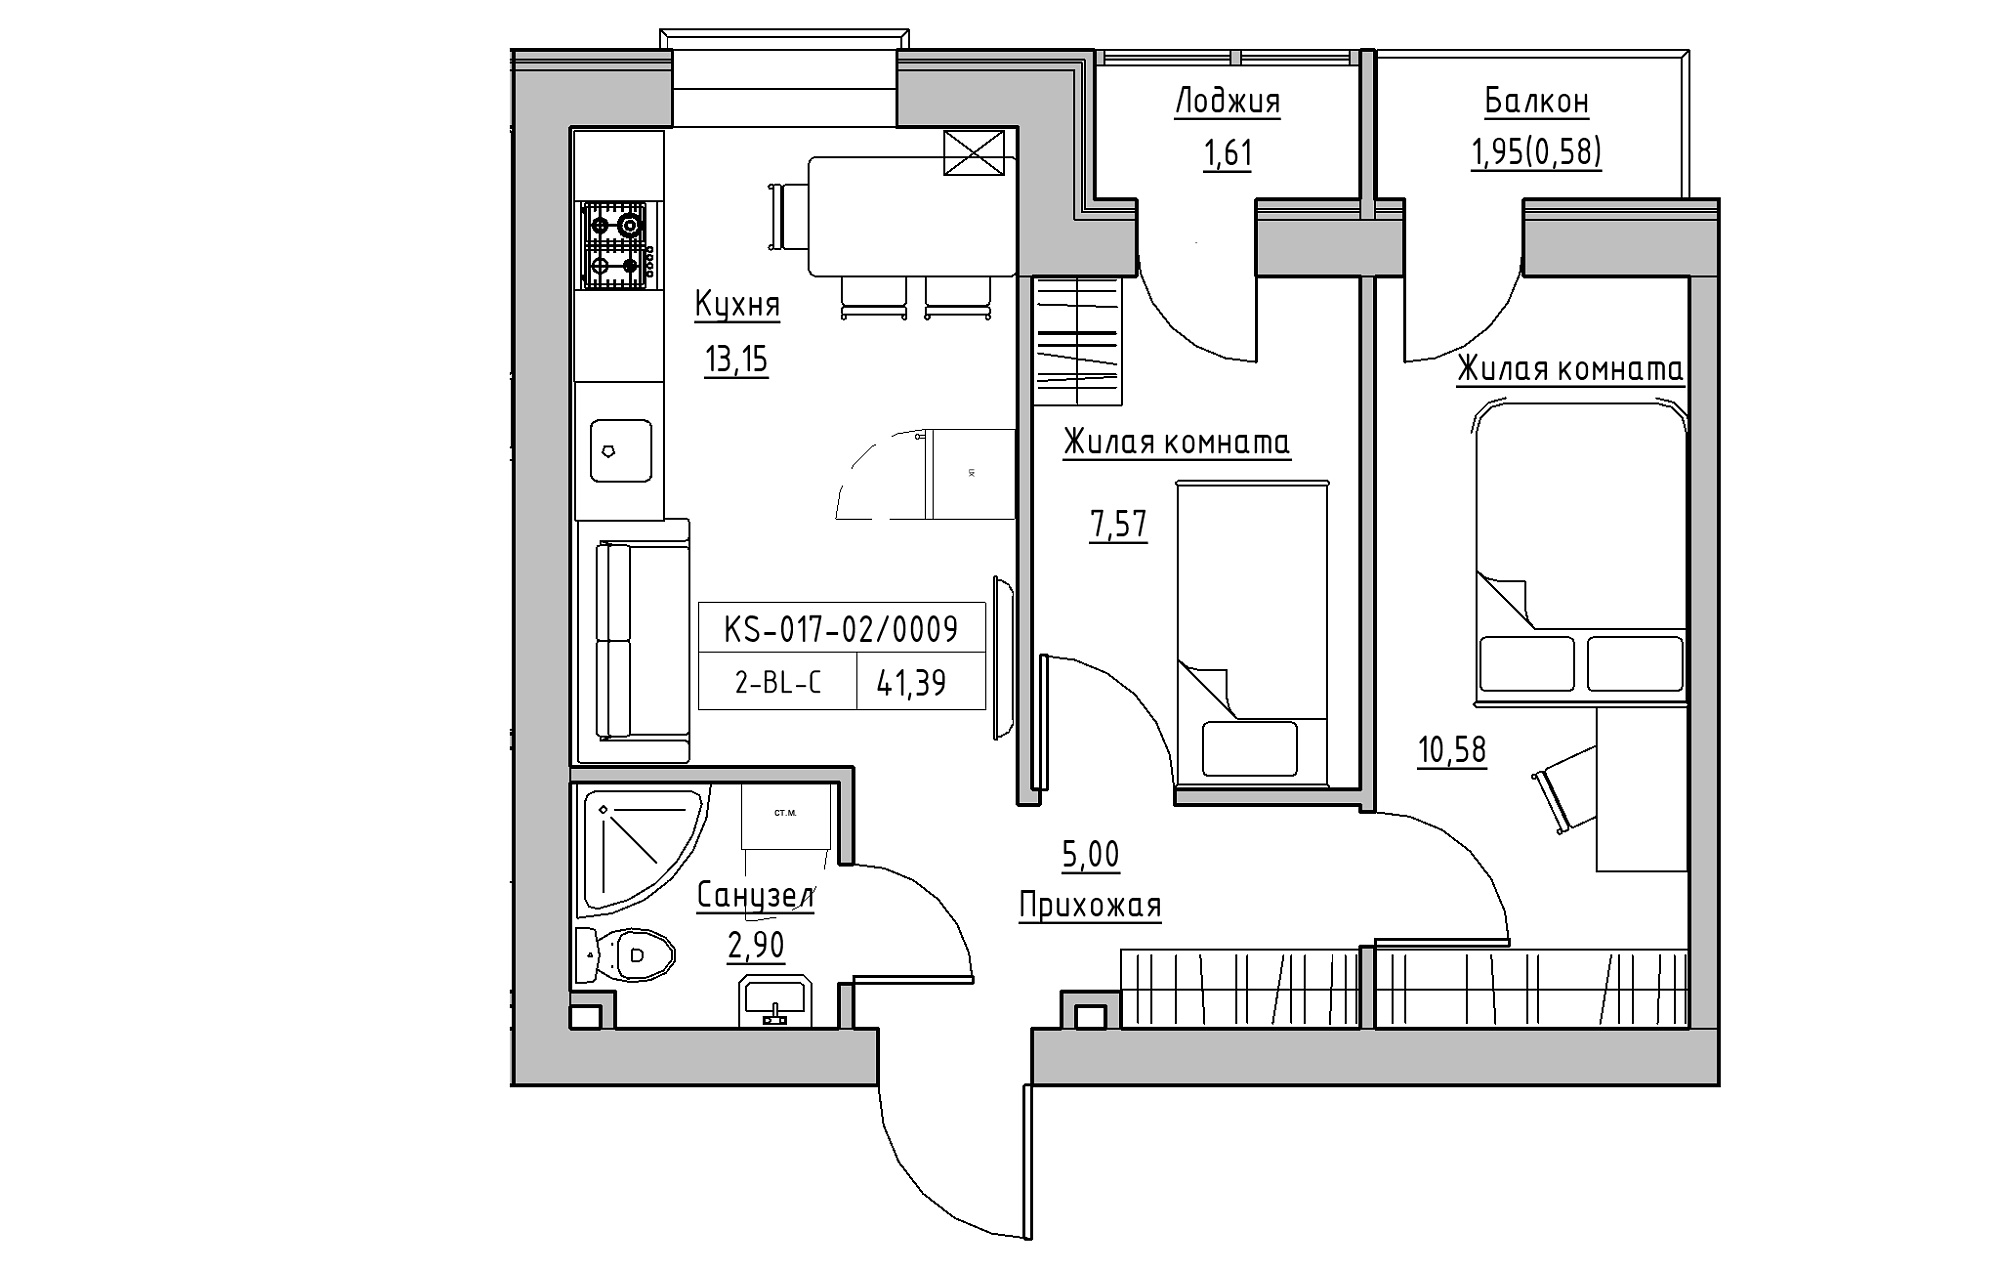 Планування 2-к квартира площею 41.39м2, KS-017-02/0009.